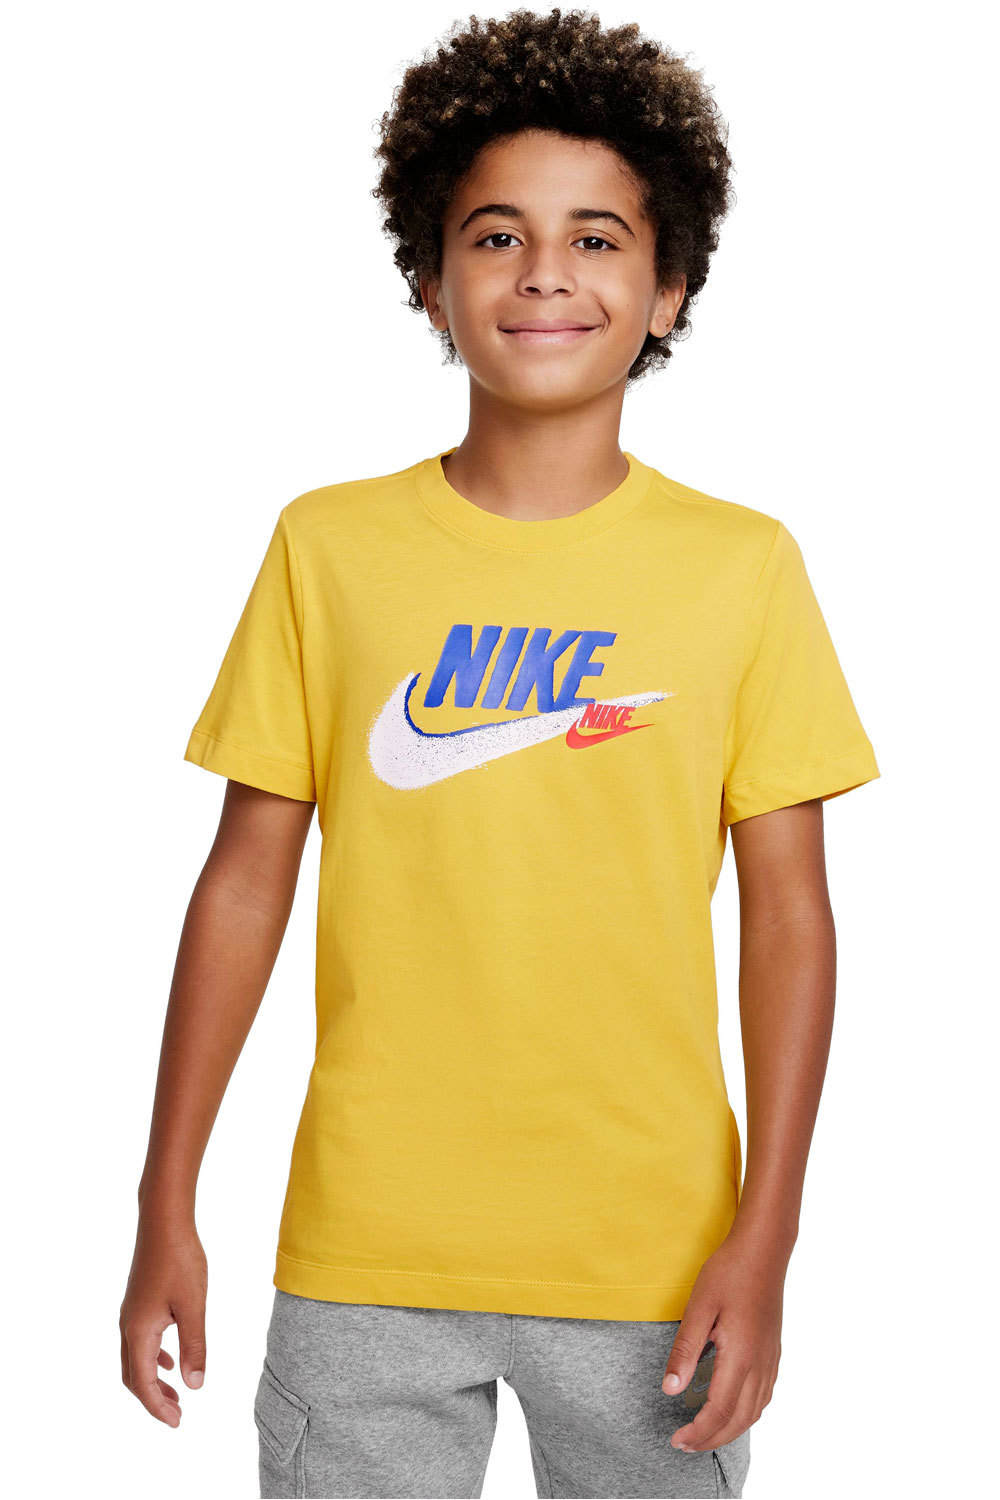 Nike camiseta manga corta niño B NSW SI SS TEE vista frontal